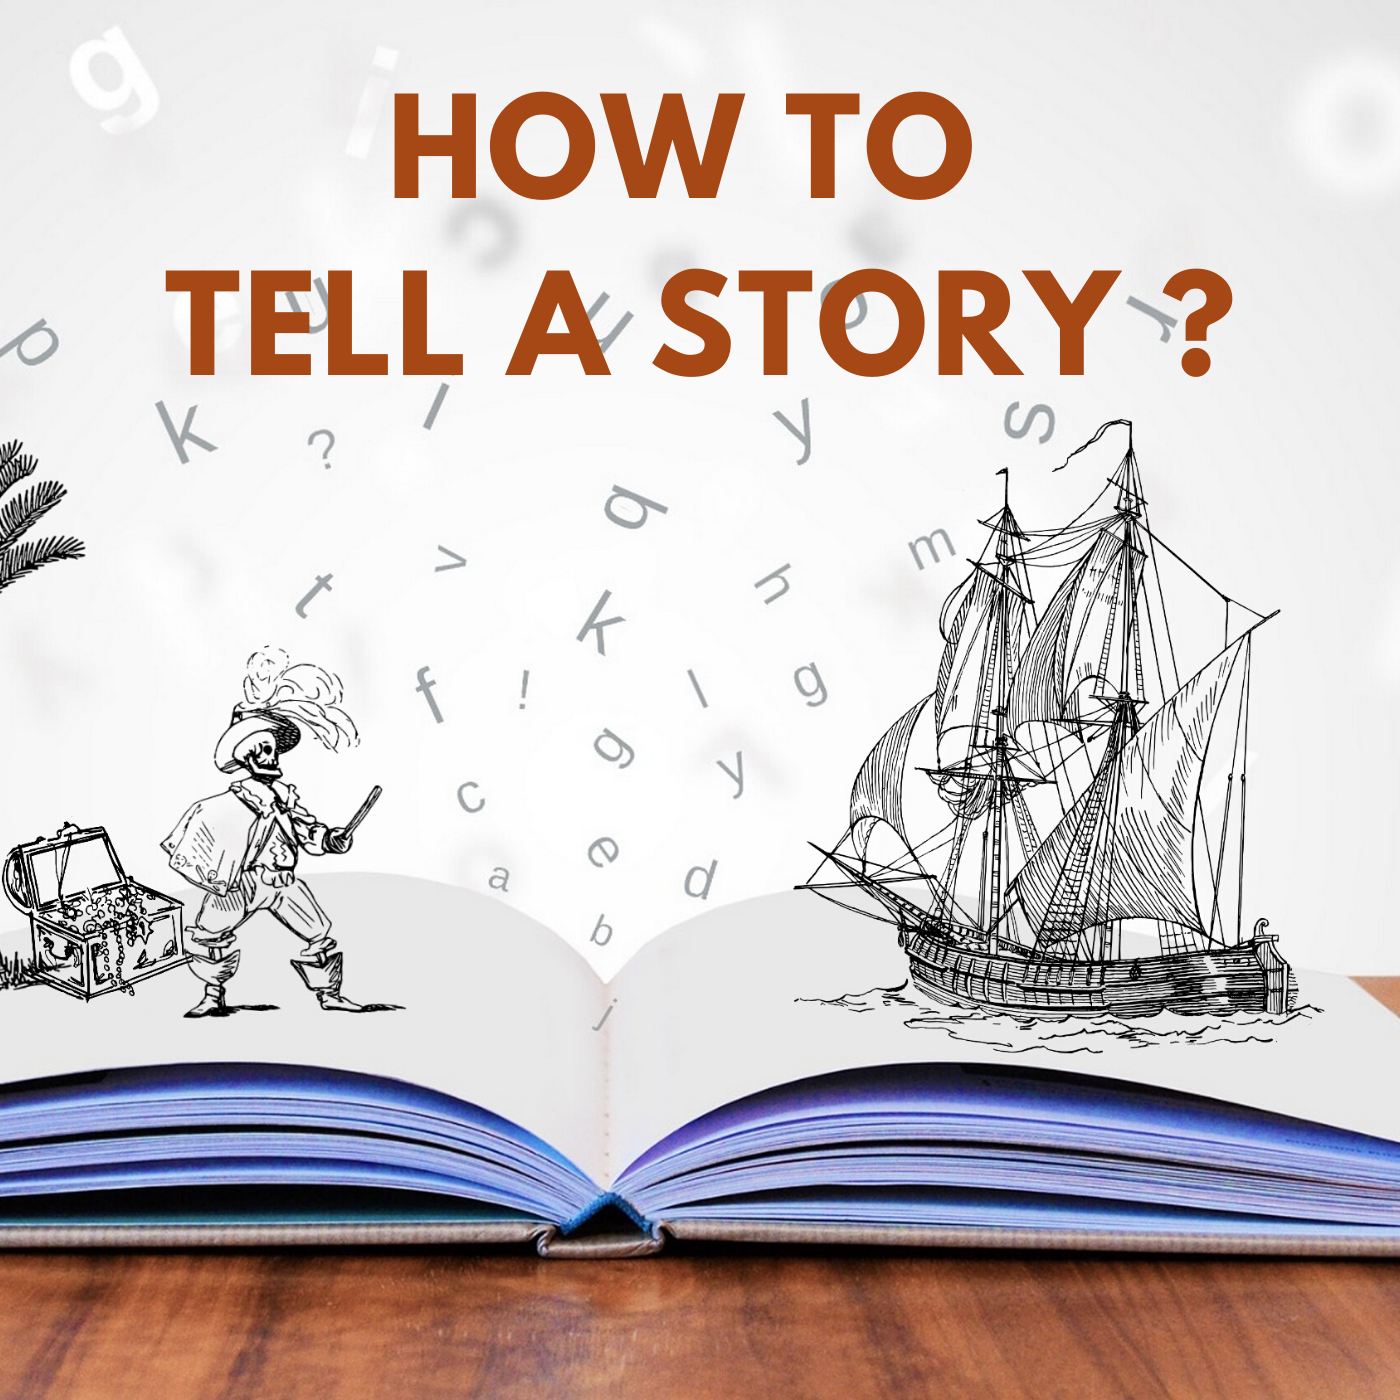 पॉडकास्ट में कहानियां बताने के विभिन्न तरीके